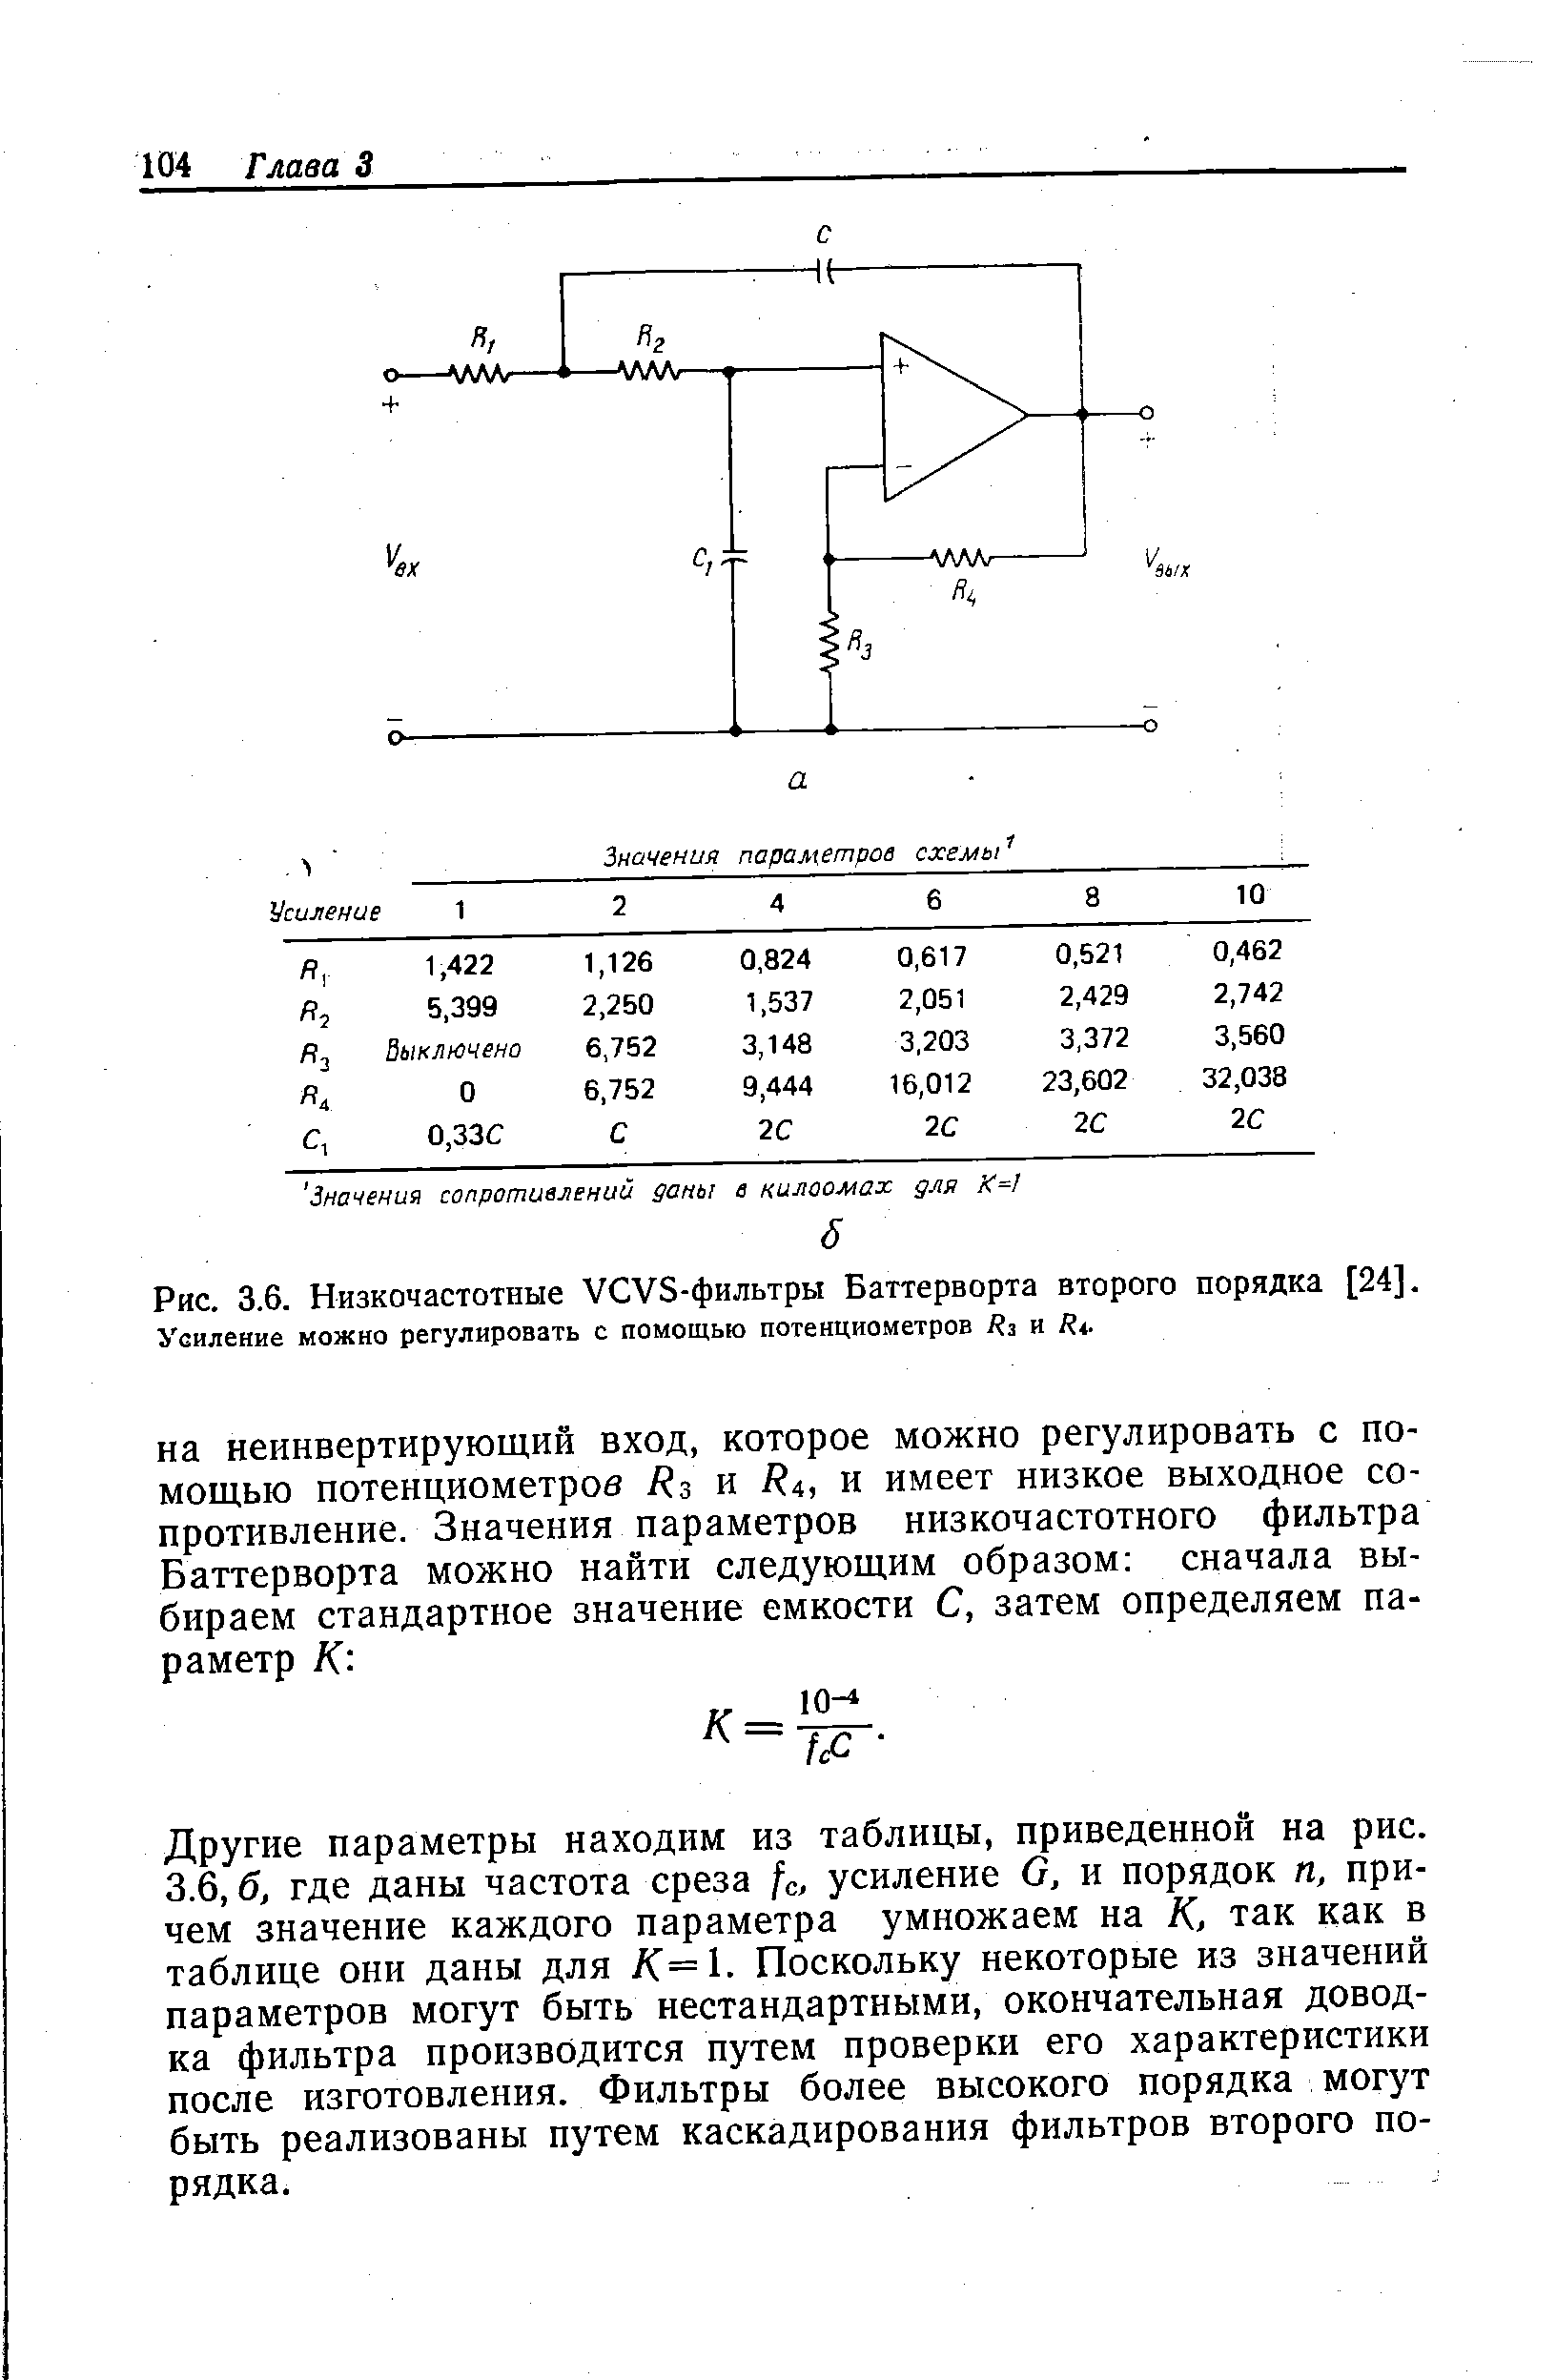 Рис. 3.6. Низкочастотные УСУБ-фильтры Баттерворта второго порядка [24]. Усиление можно регулировать с помощью потенциометров Яз и Вл.